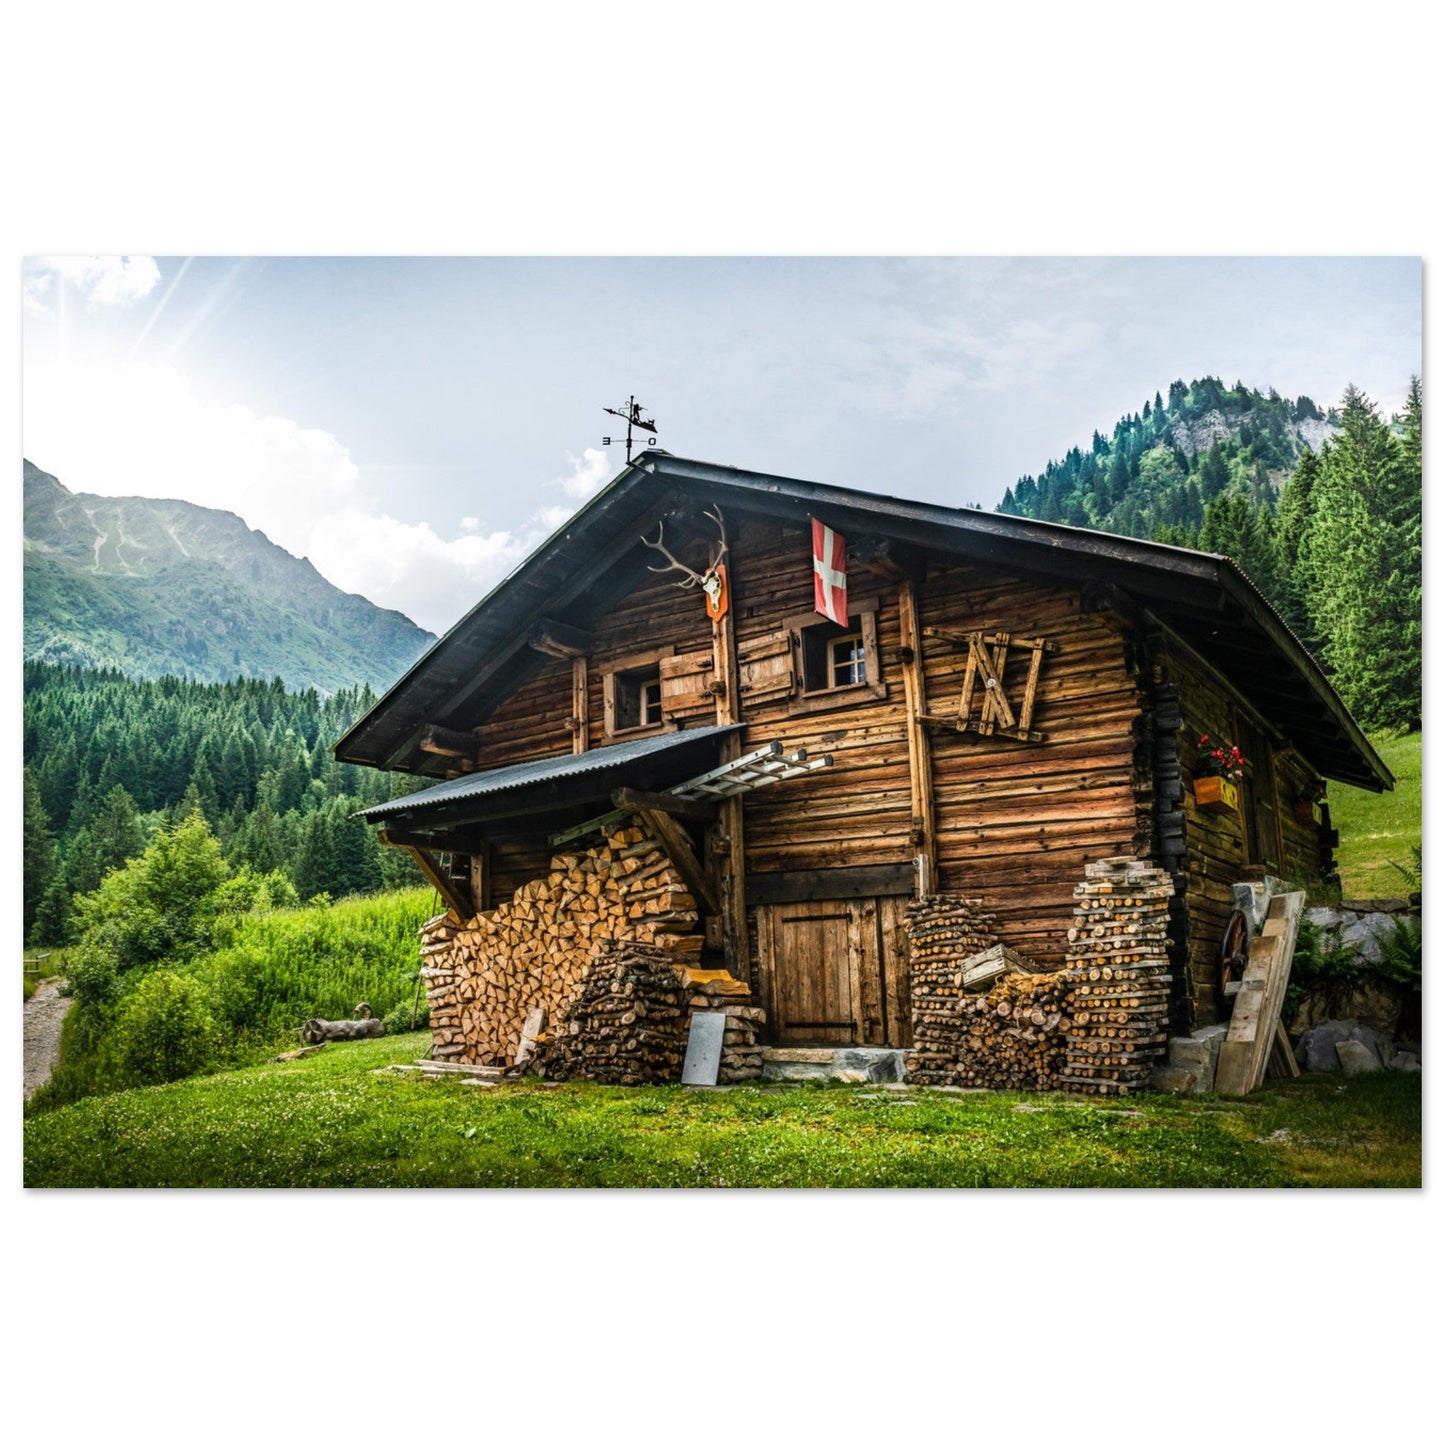 Vente Photo d'un chalet typique de Haute-Savoie, vallée des Contamines-Montjoie - Tableau photo alu montagne